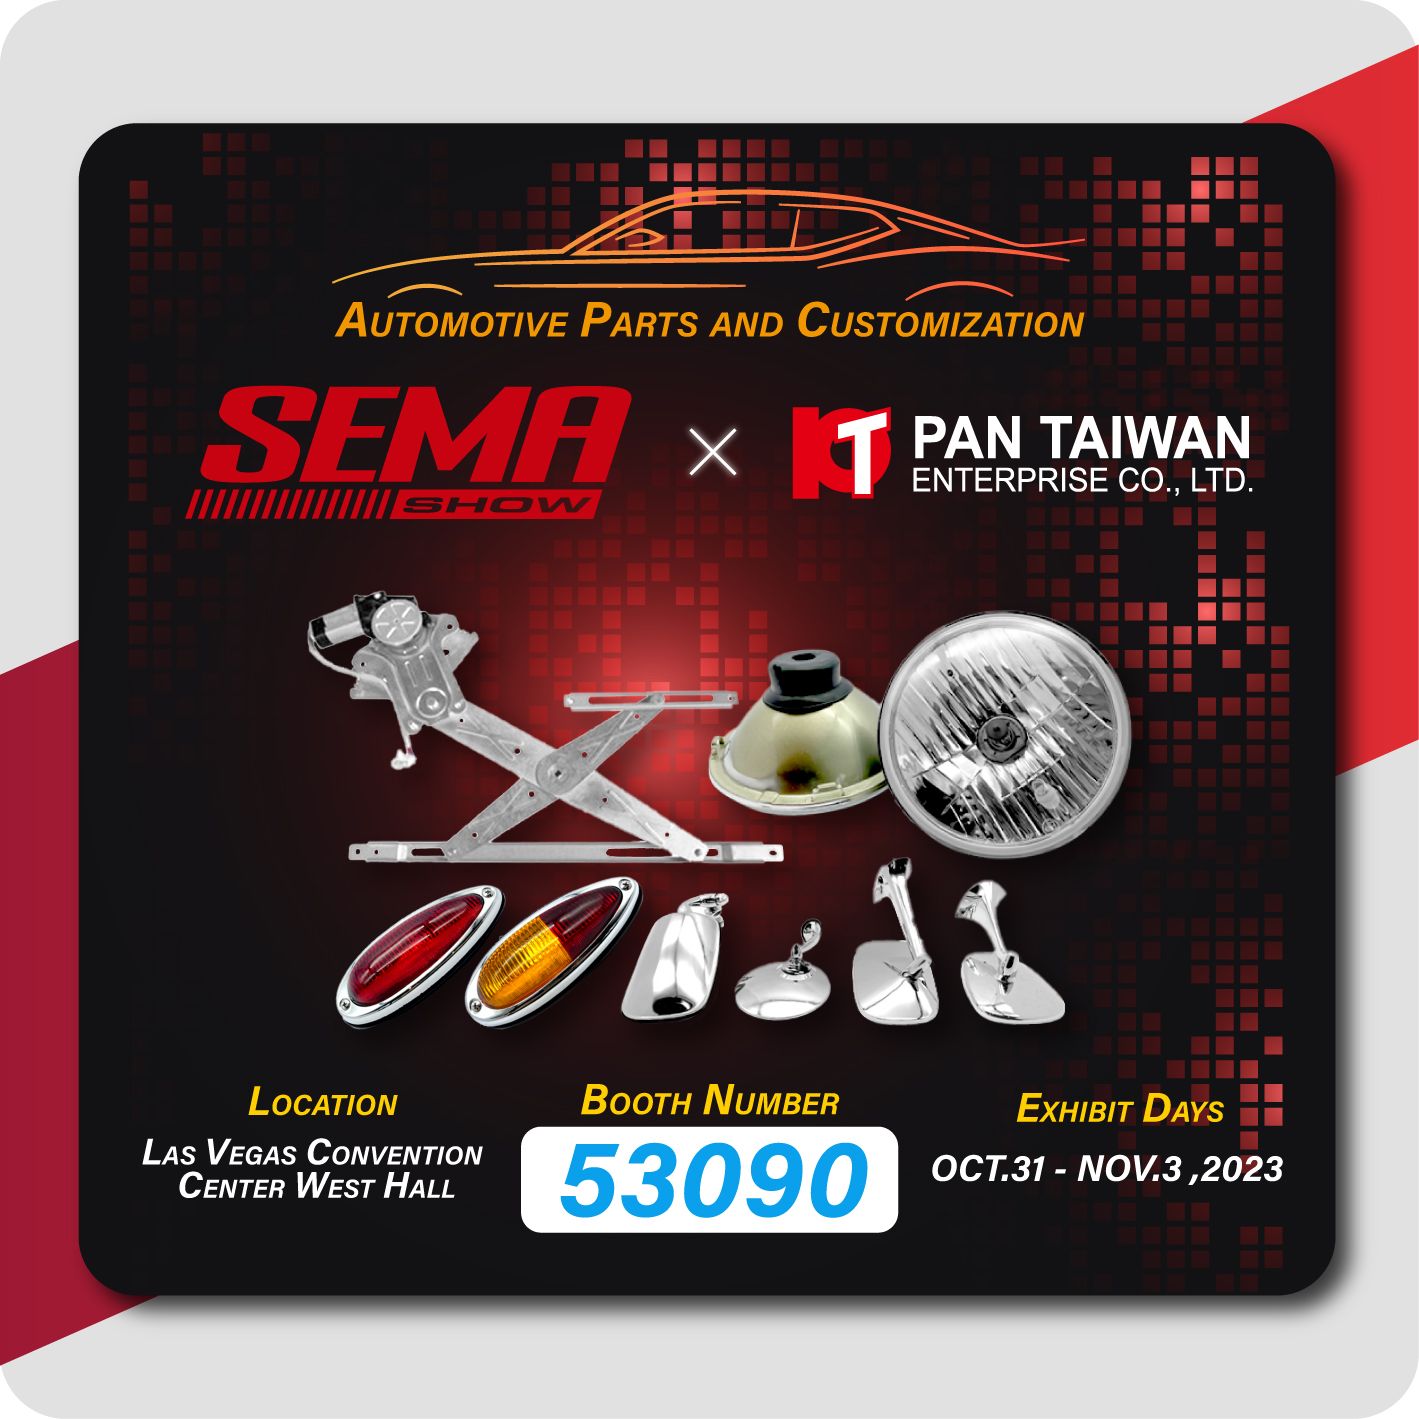 Pan Taiwan participe au SEMA 2023 et présente notre régulateur de fenêtre, pièces de voiture classiques et service personnalisé pour les voitures auto et hybrides électriques à tous nos clients.